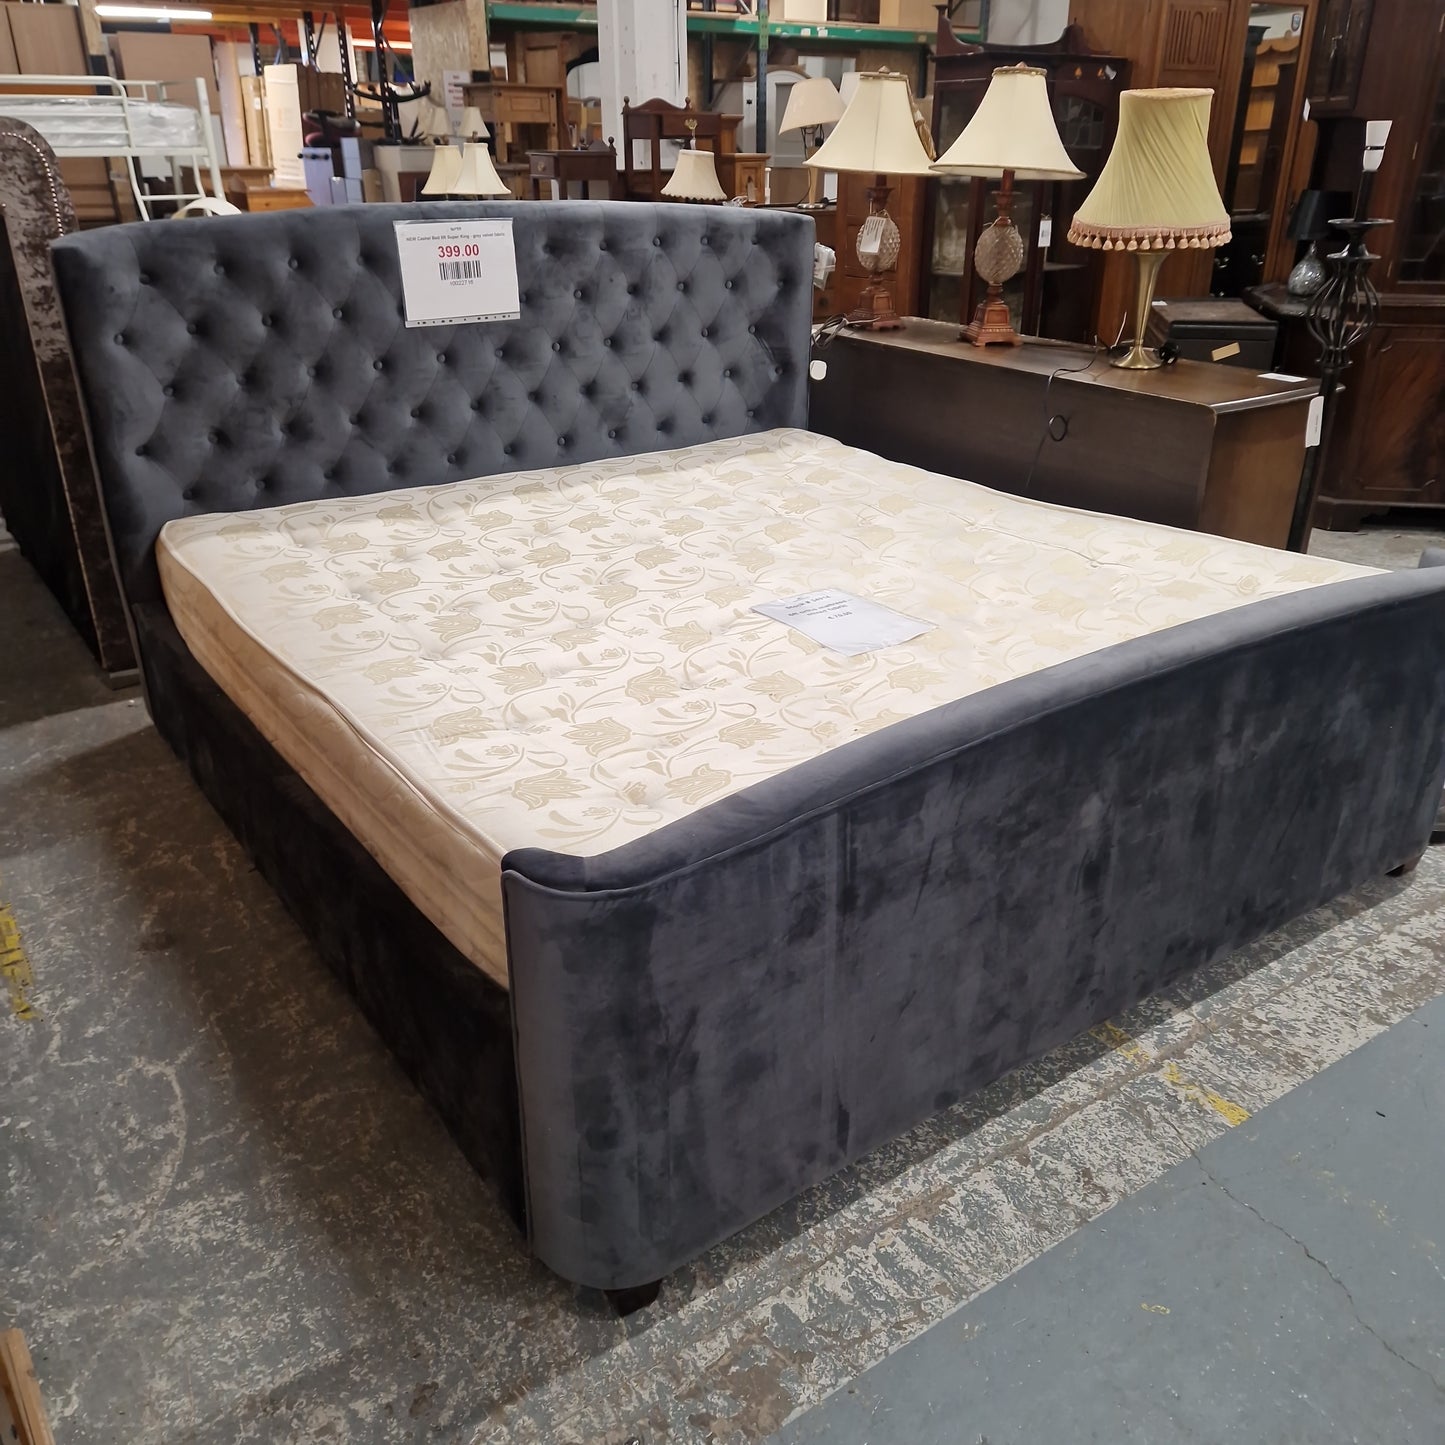 NEW Cashel Bed 6ft Super King - grey velvet fabric